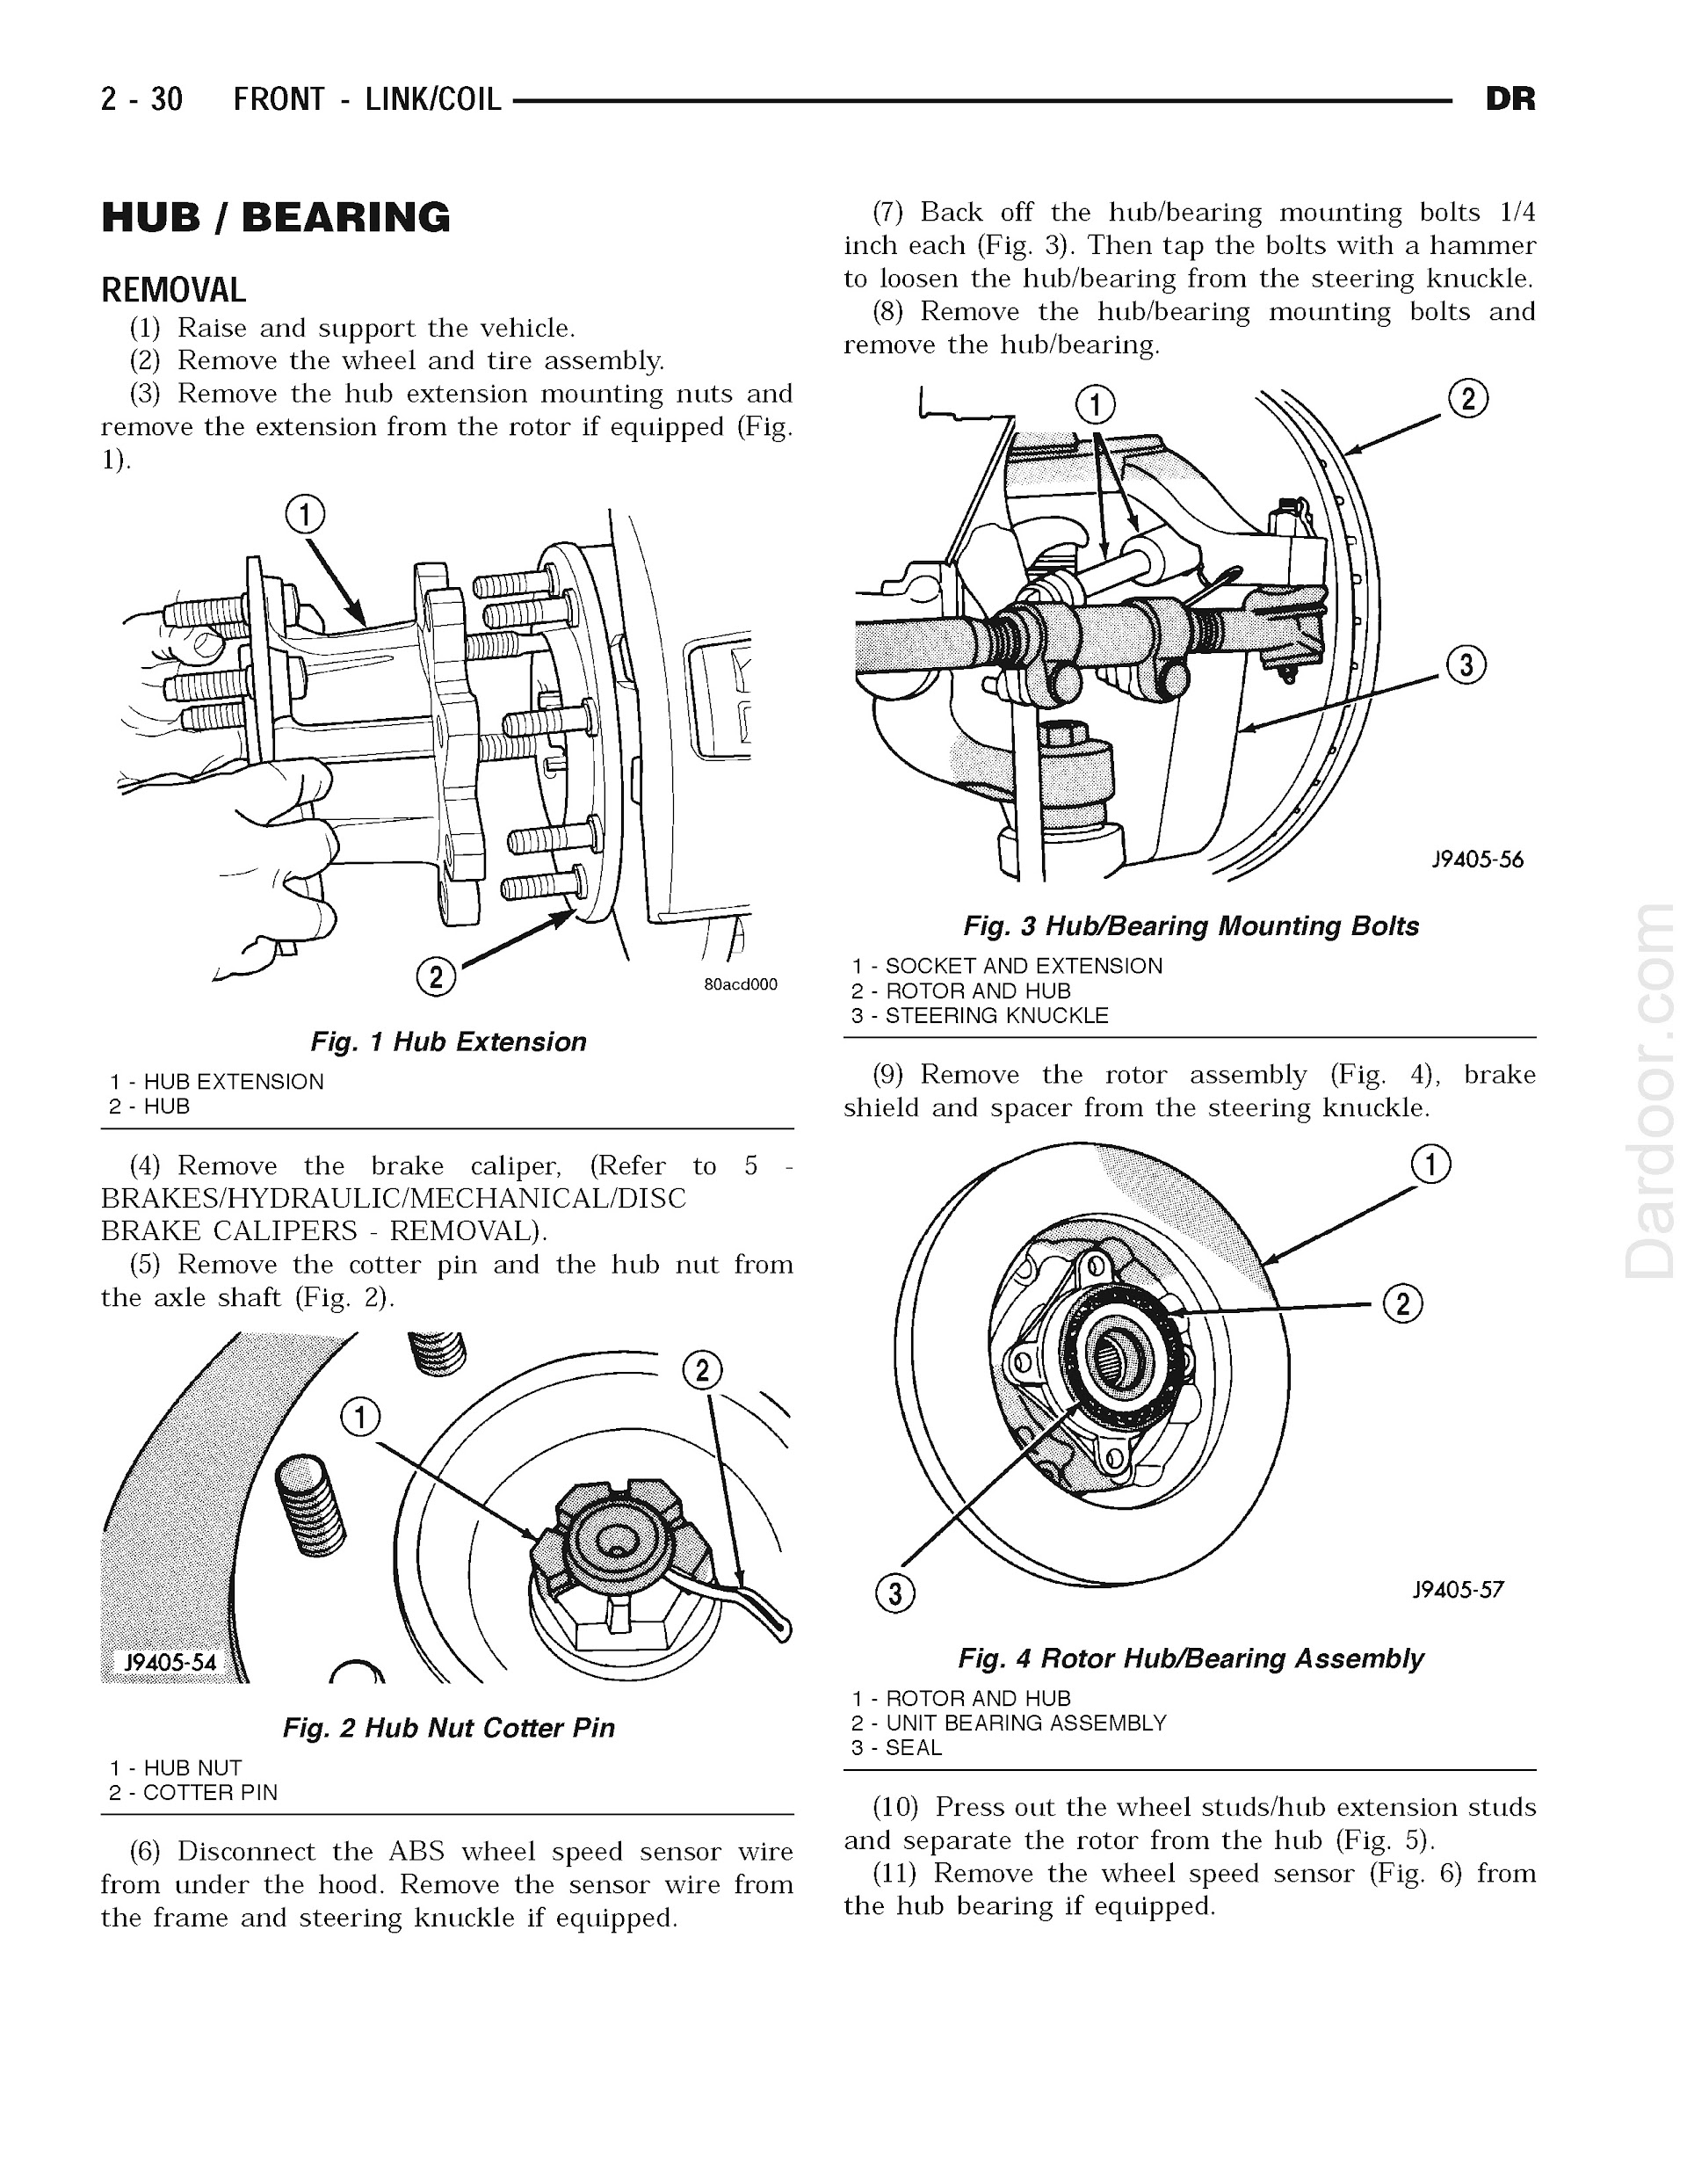 2003 Dodge RAM Truck Repair Manual